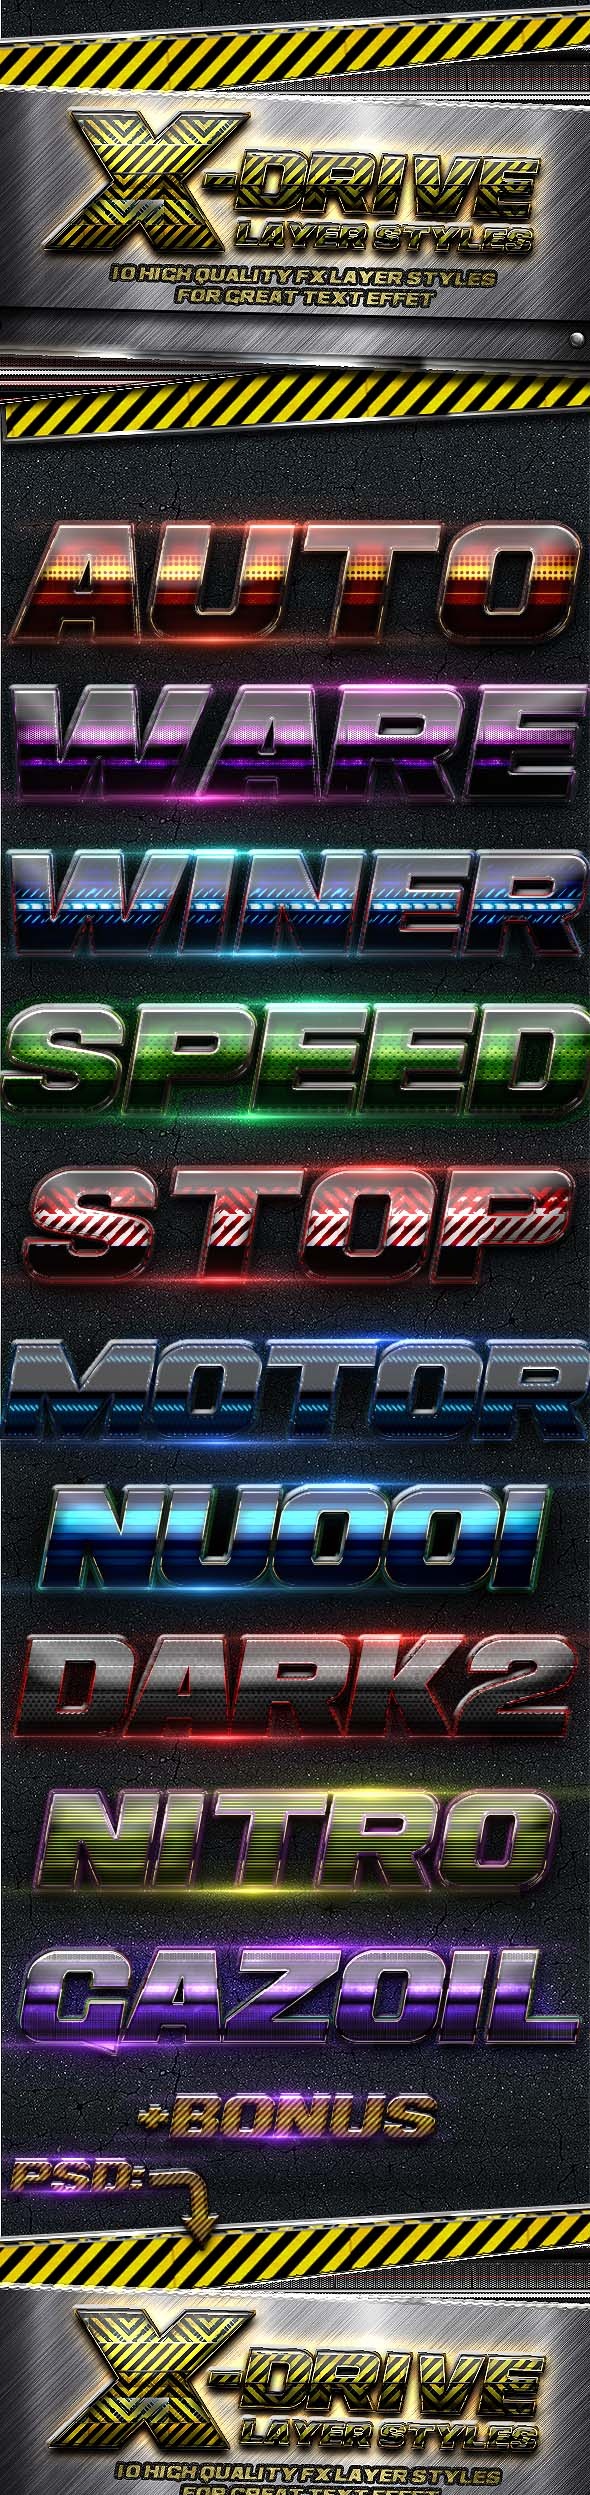 赛车速度海报设计Mockups展示模板素材